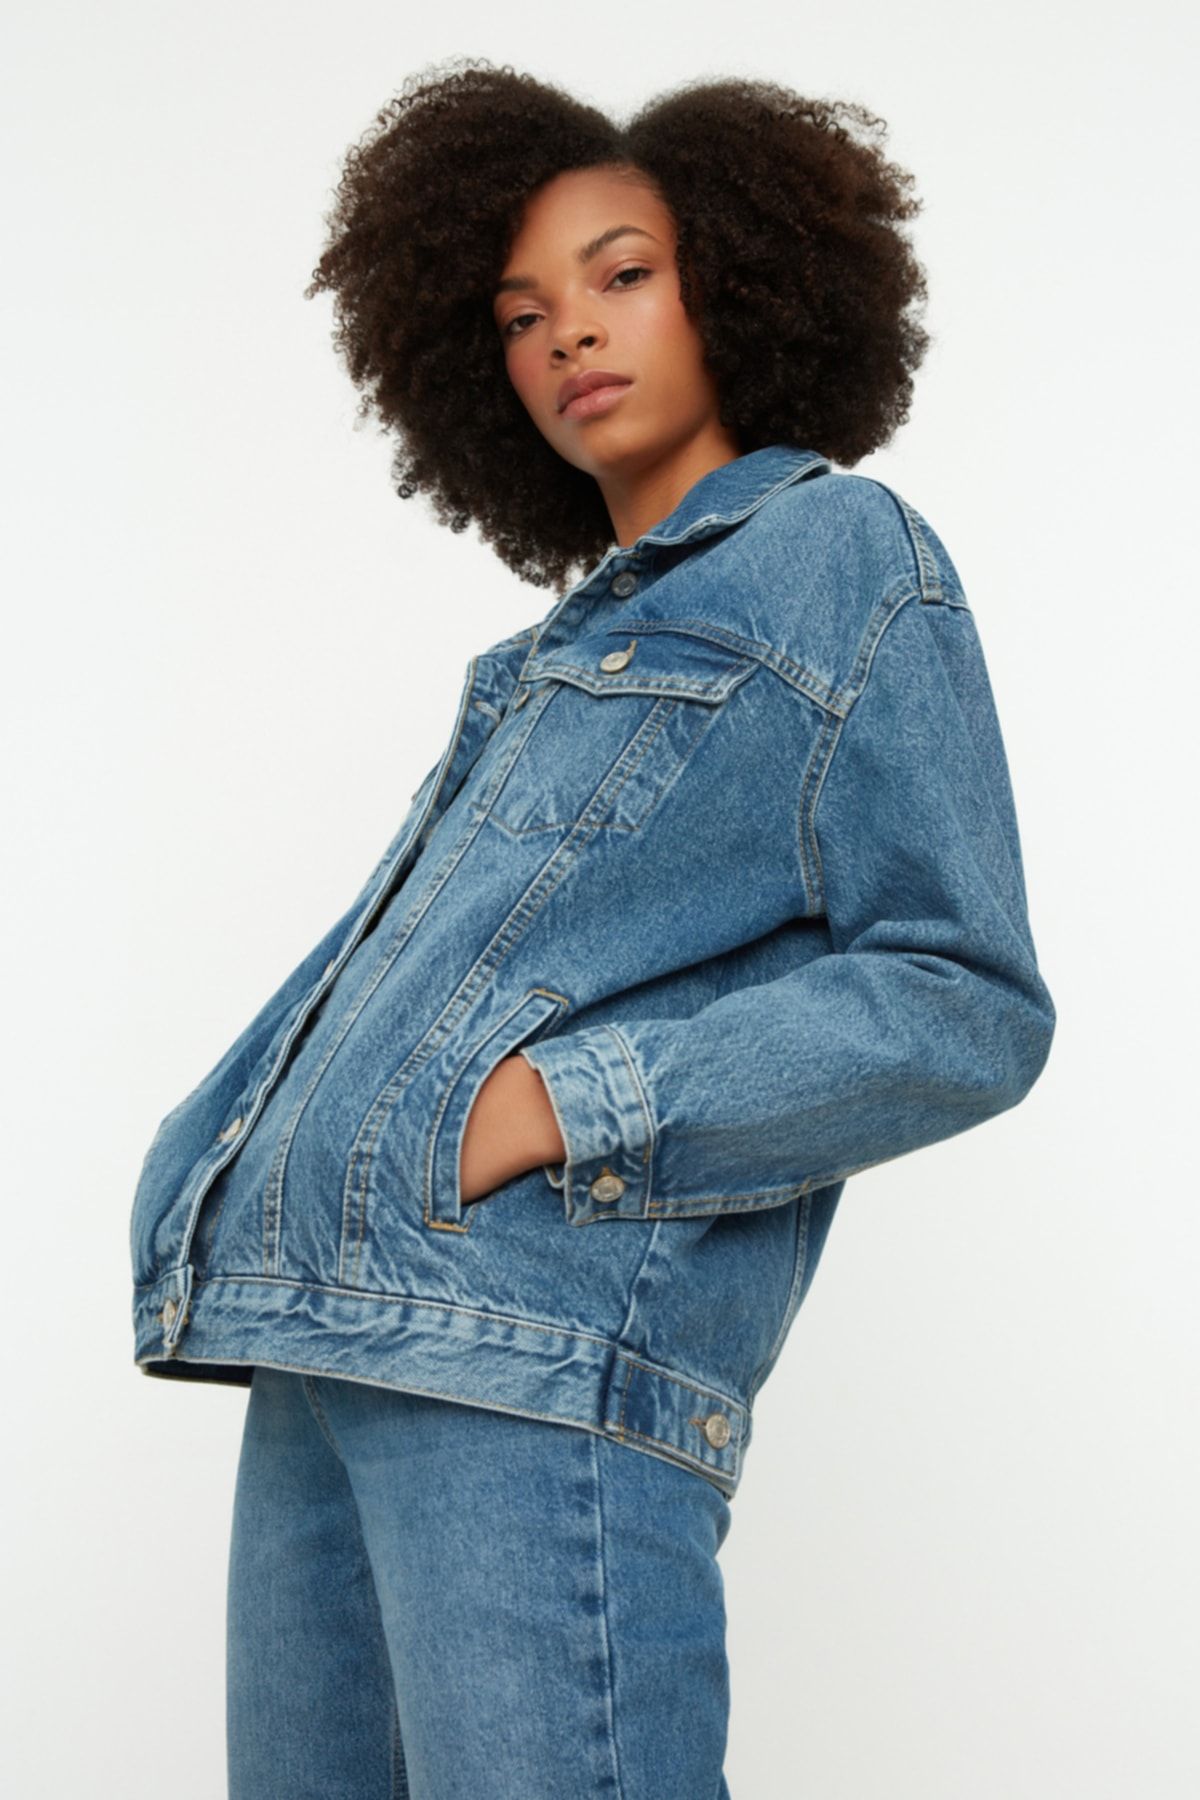 LifeShe Women's Rhinestones Fringe Denim Jacket Oversized Cropped Jean  Jacket Coat at Amazon Women's Coats Shop